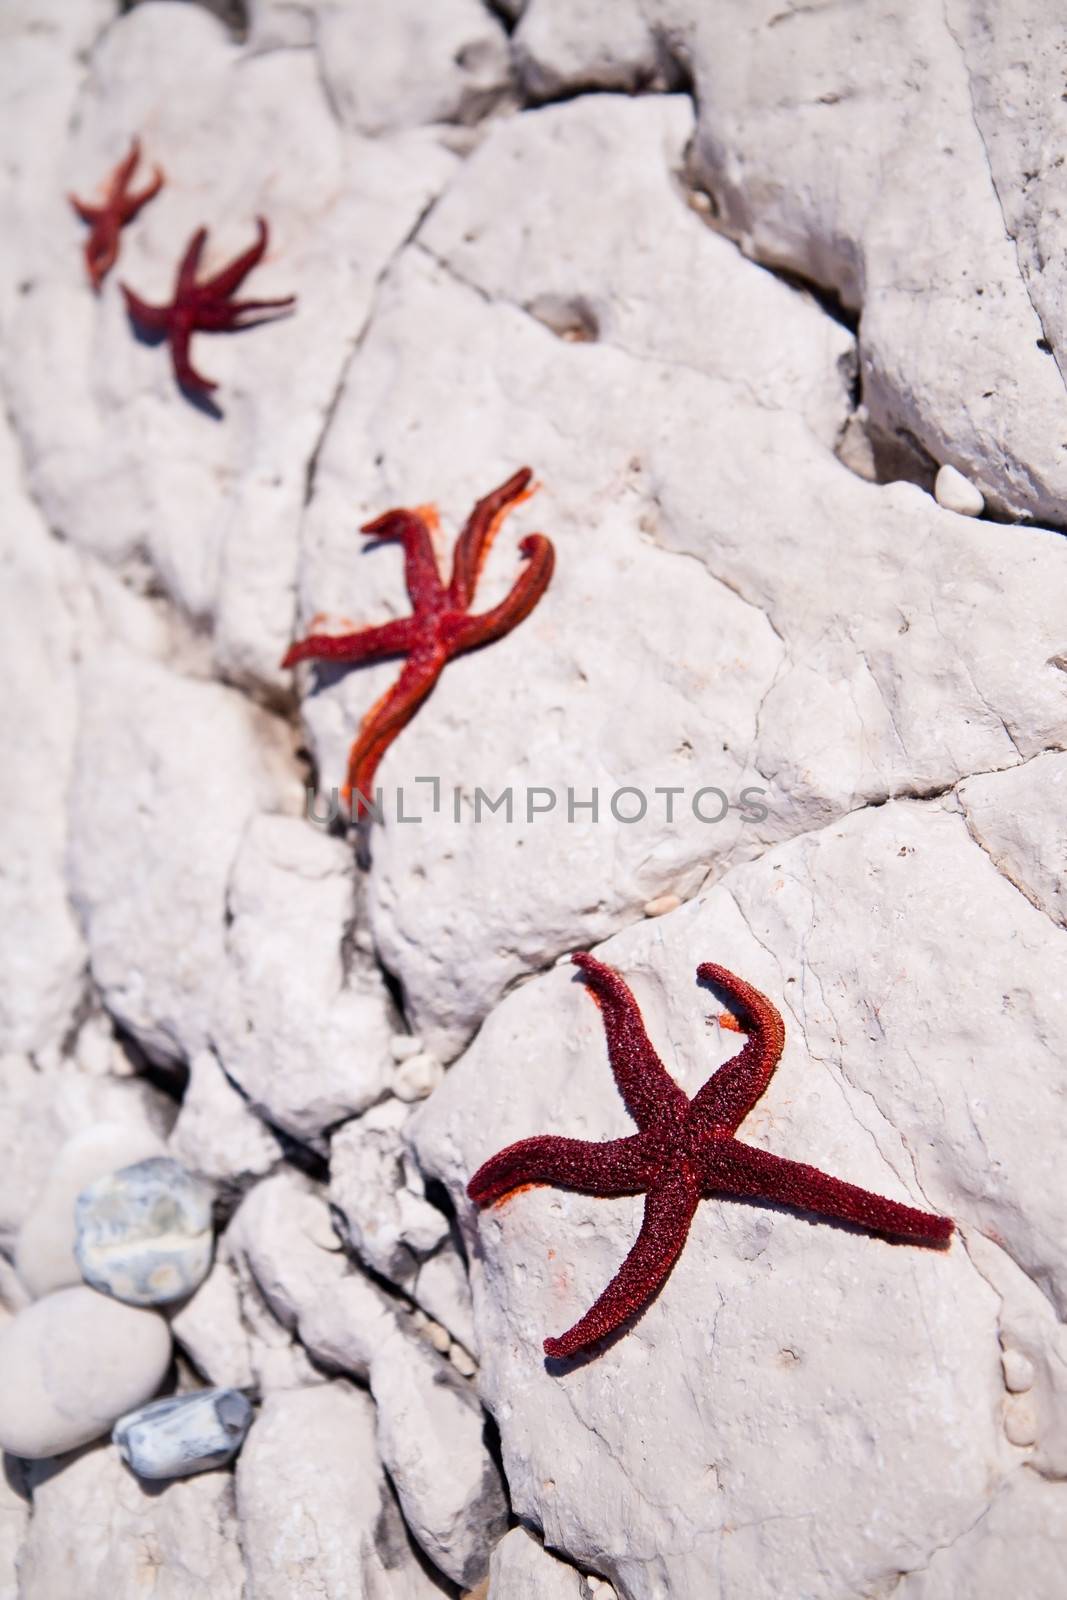 Four starfish by Gbuglok